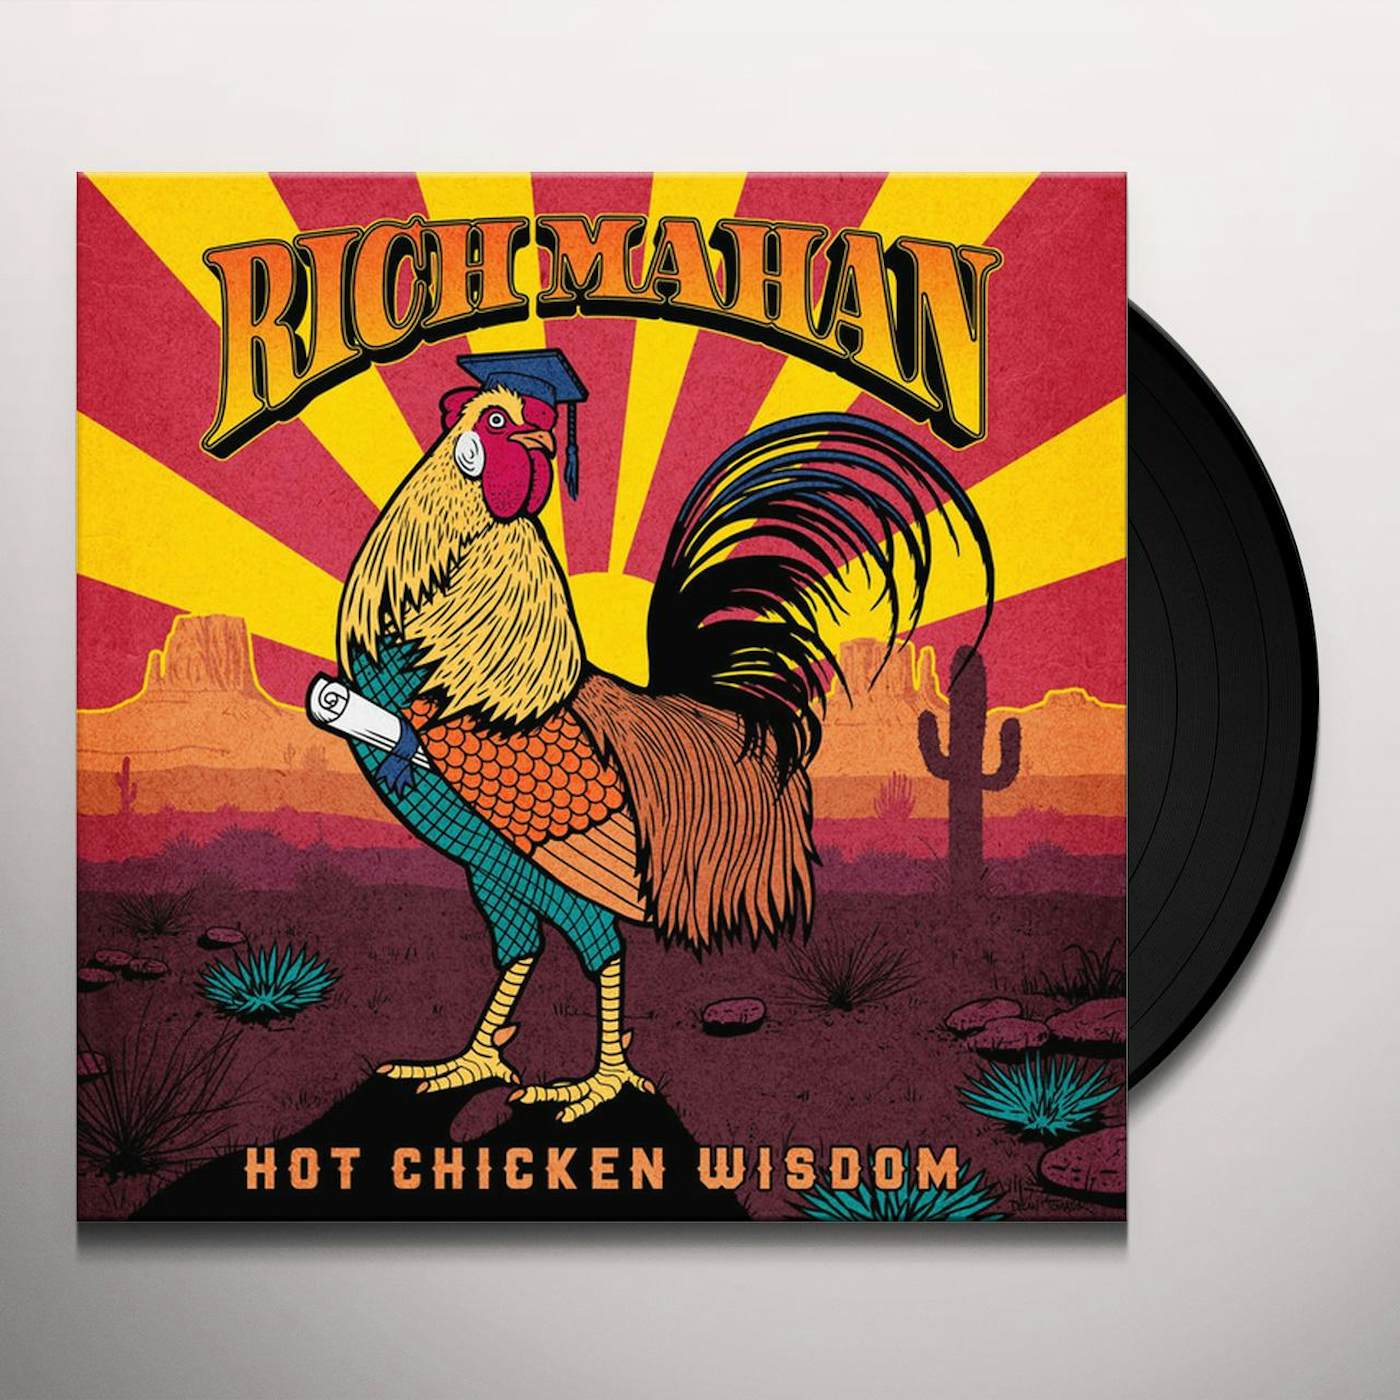 Rich Mahan Hot Chicken Wisdom Vinyl Record